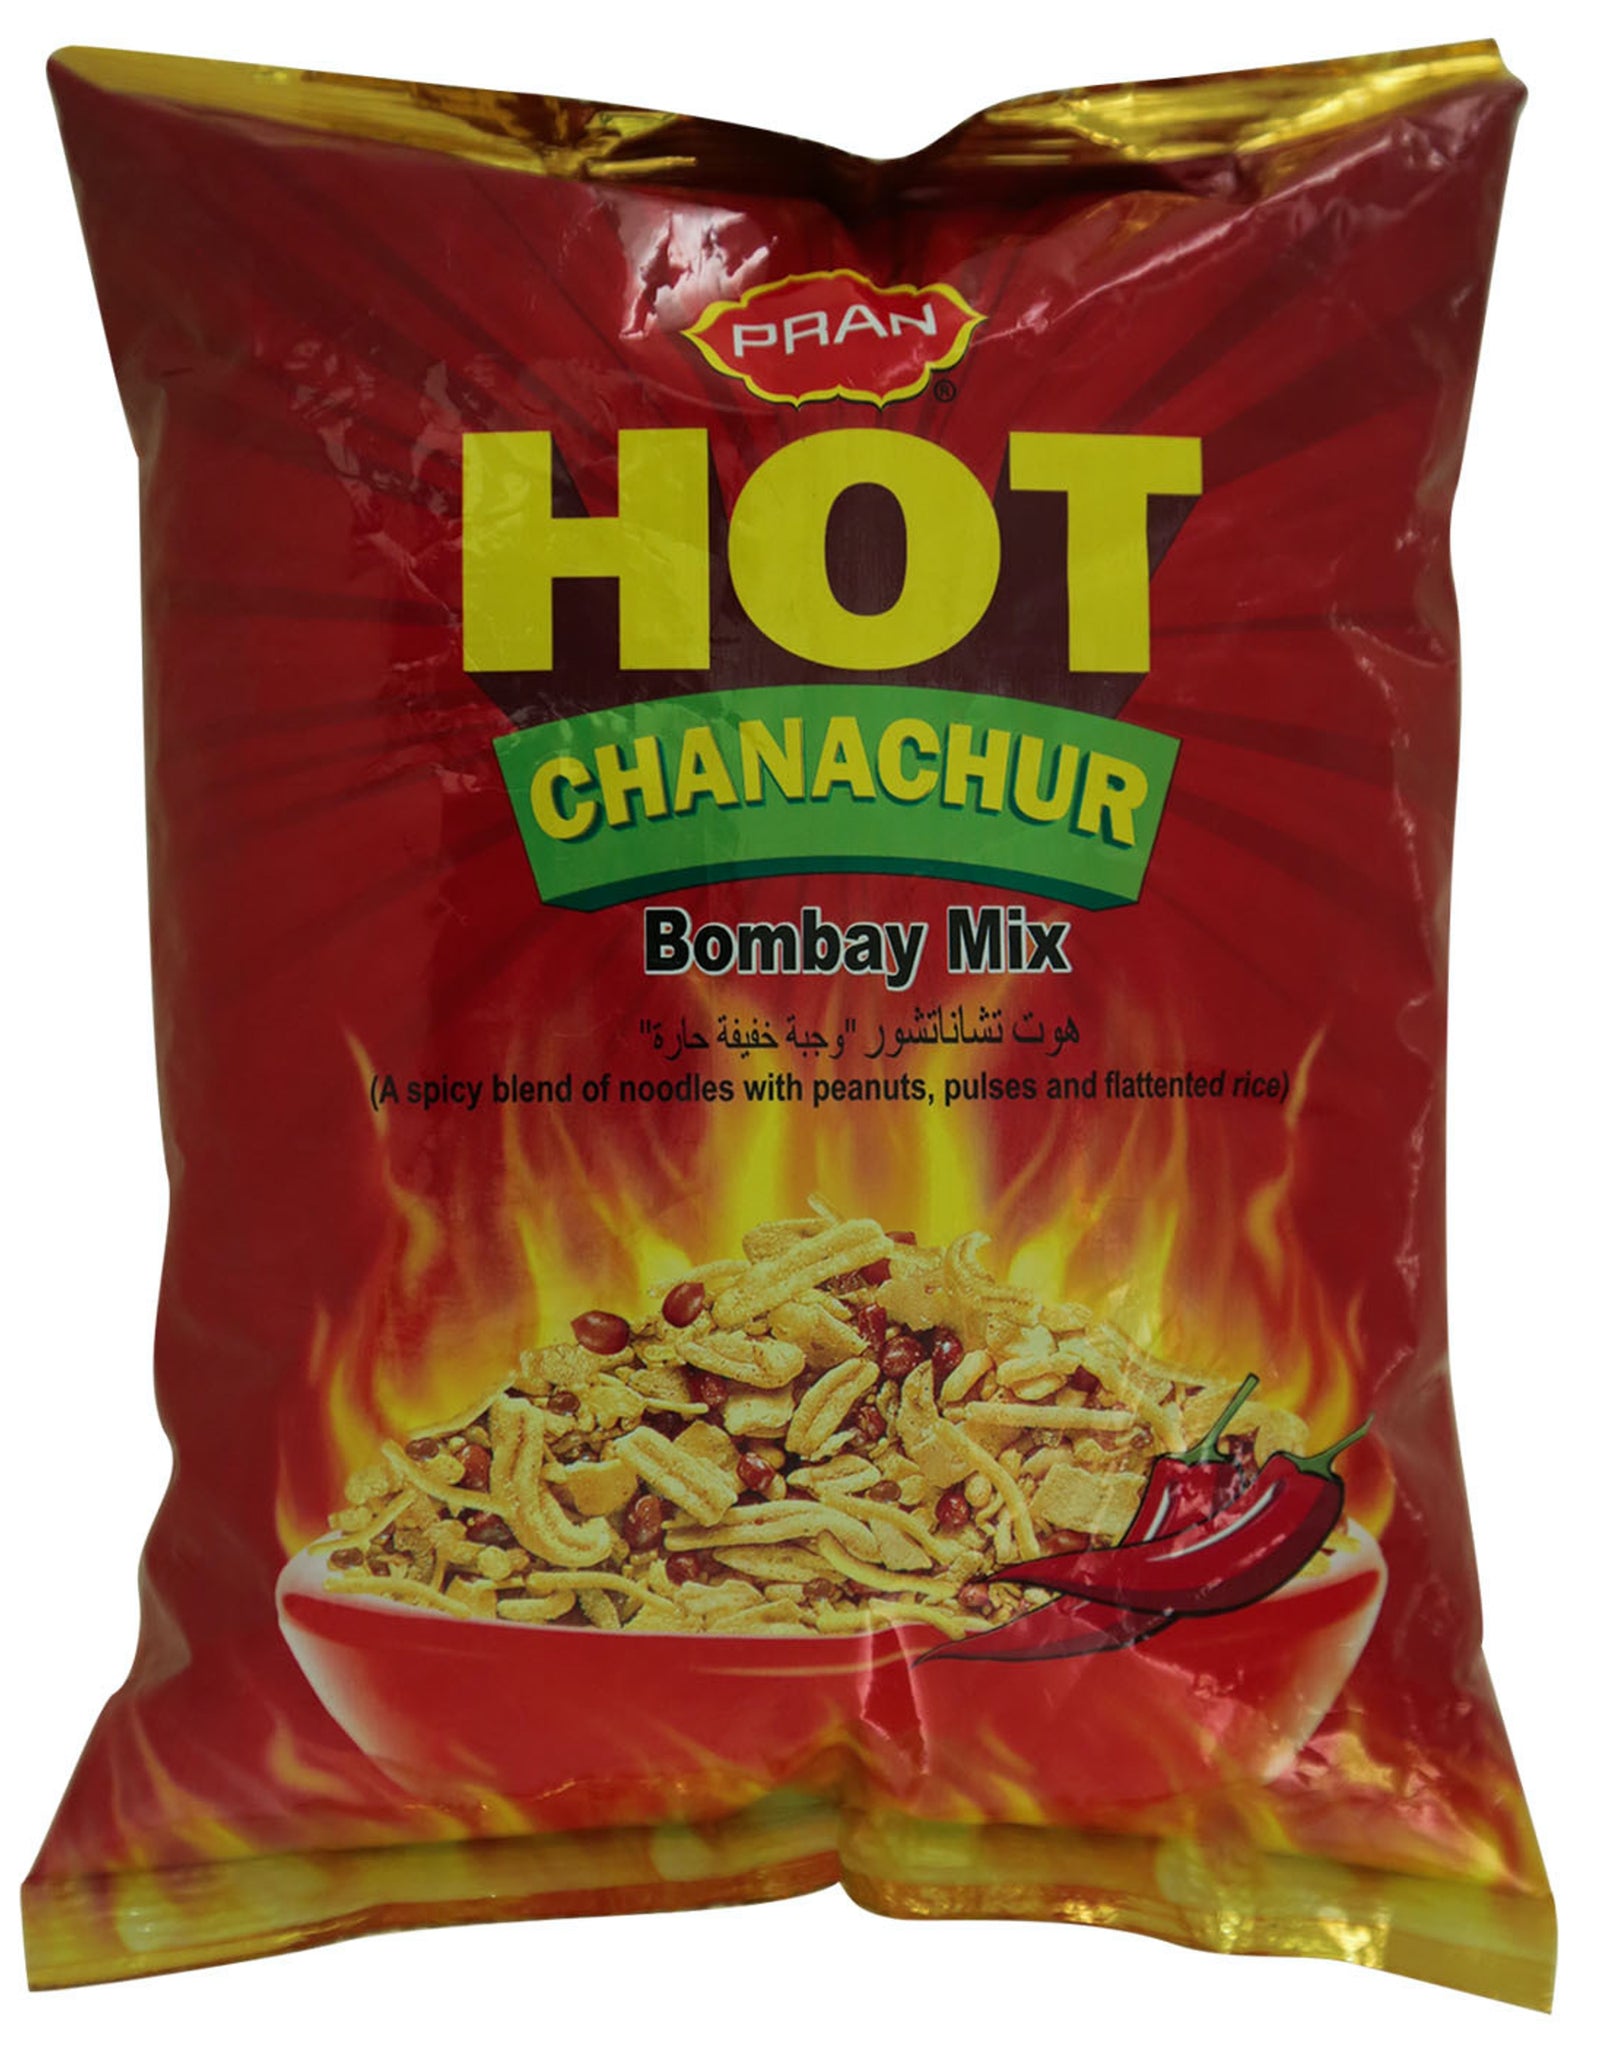 Hot Chanachur Bombay Mix